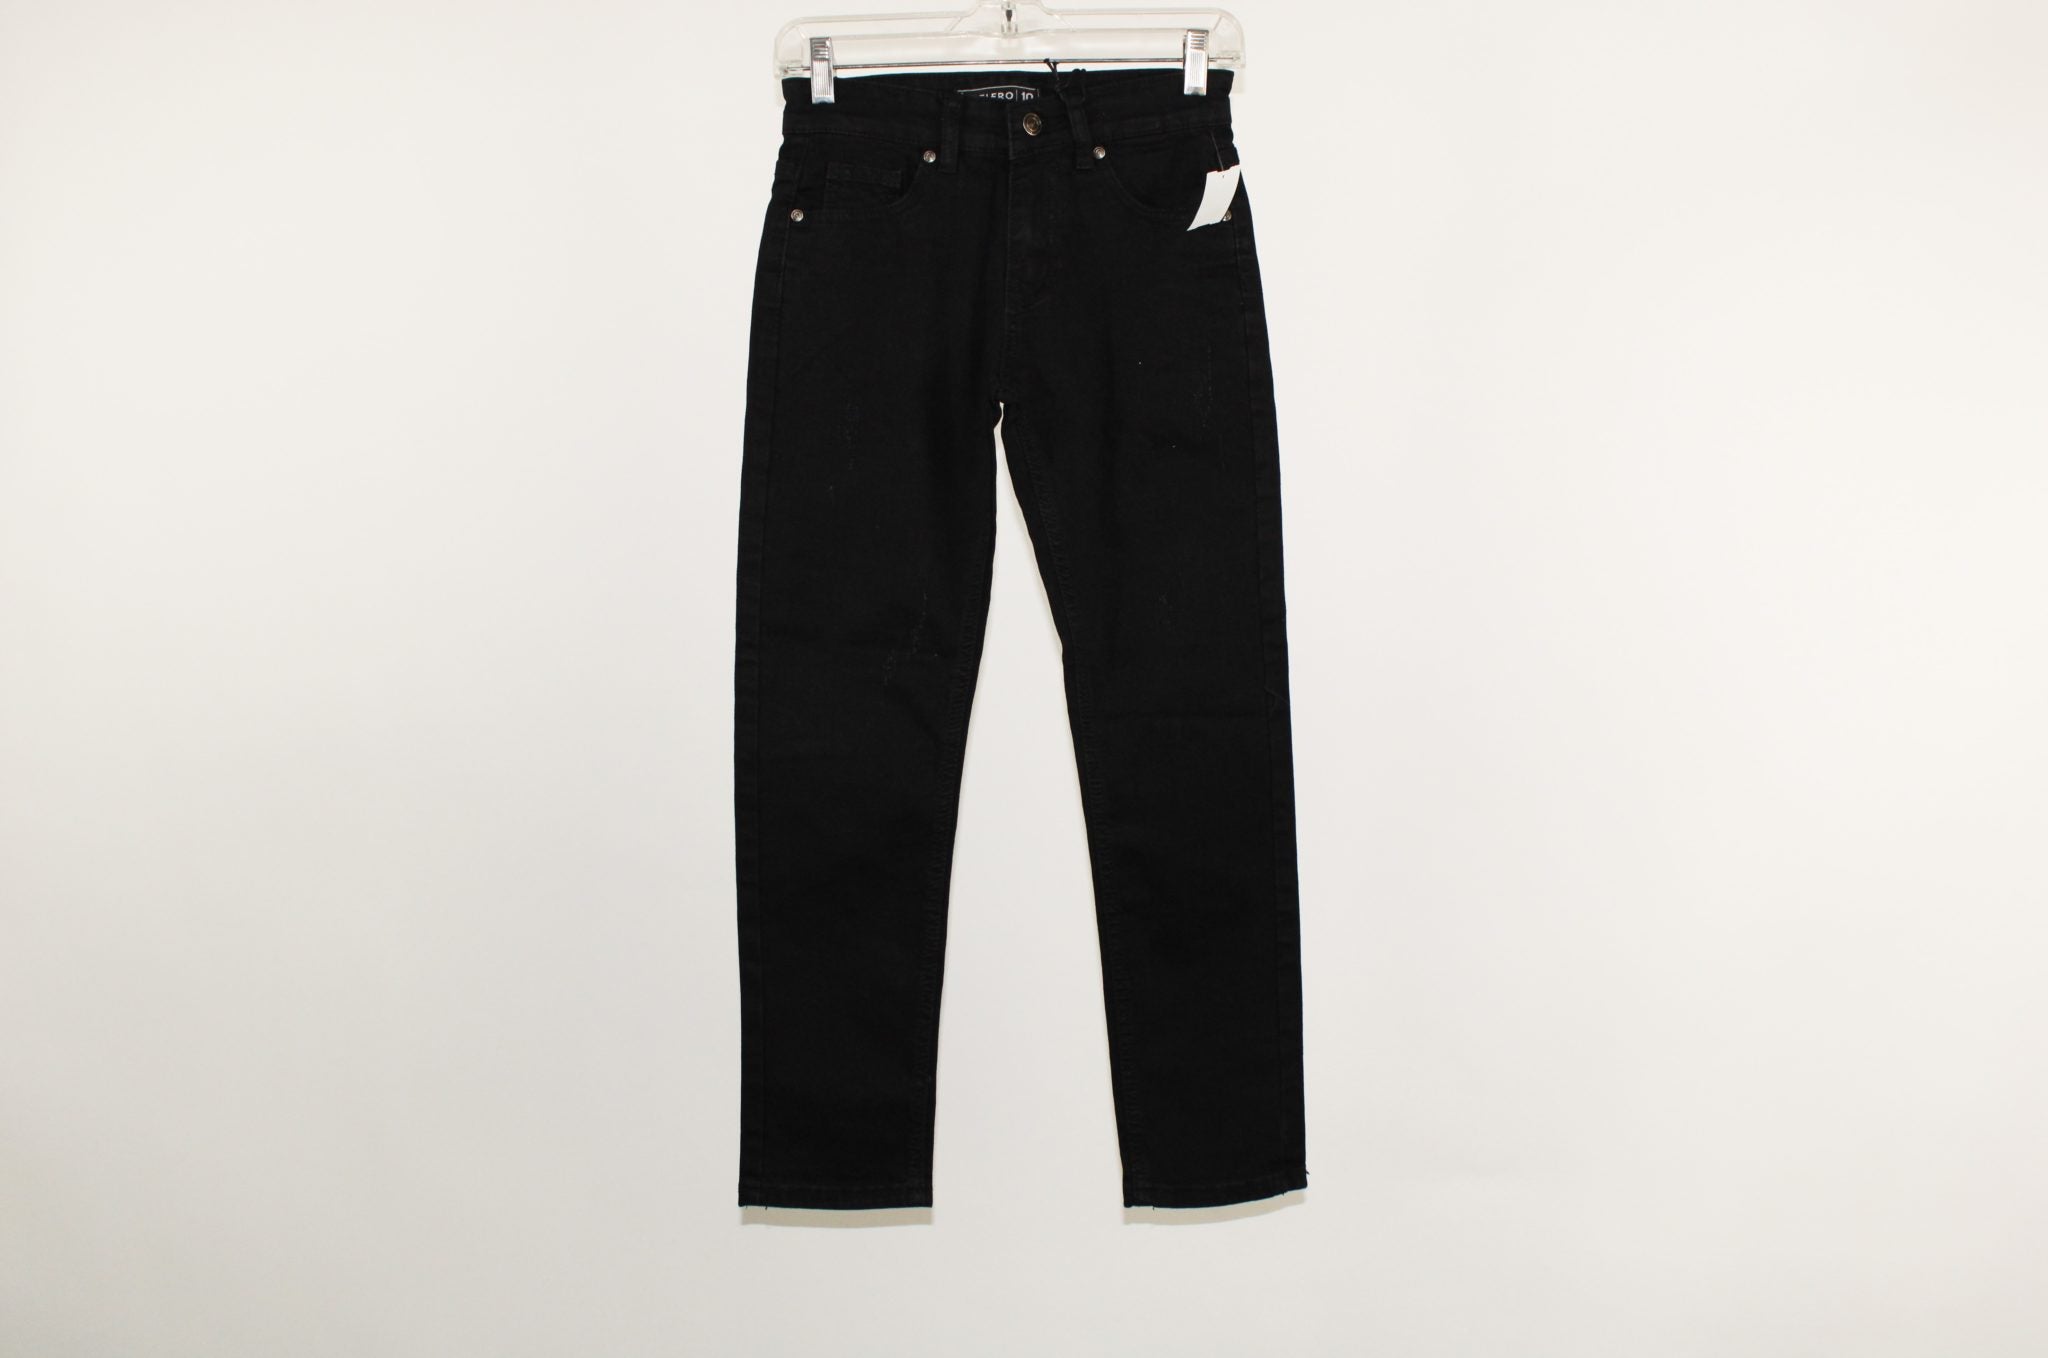 Velero Black Jeans | Size 10